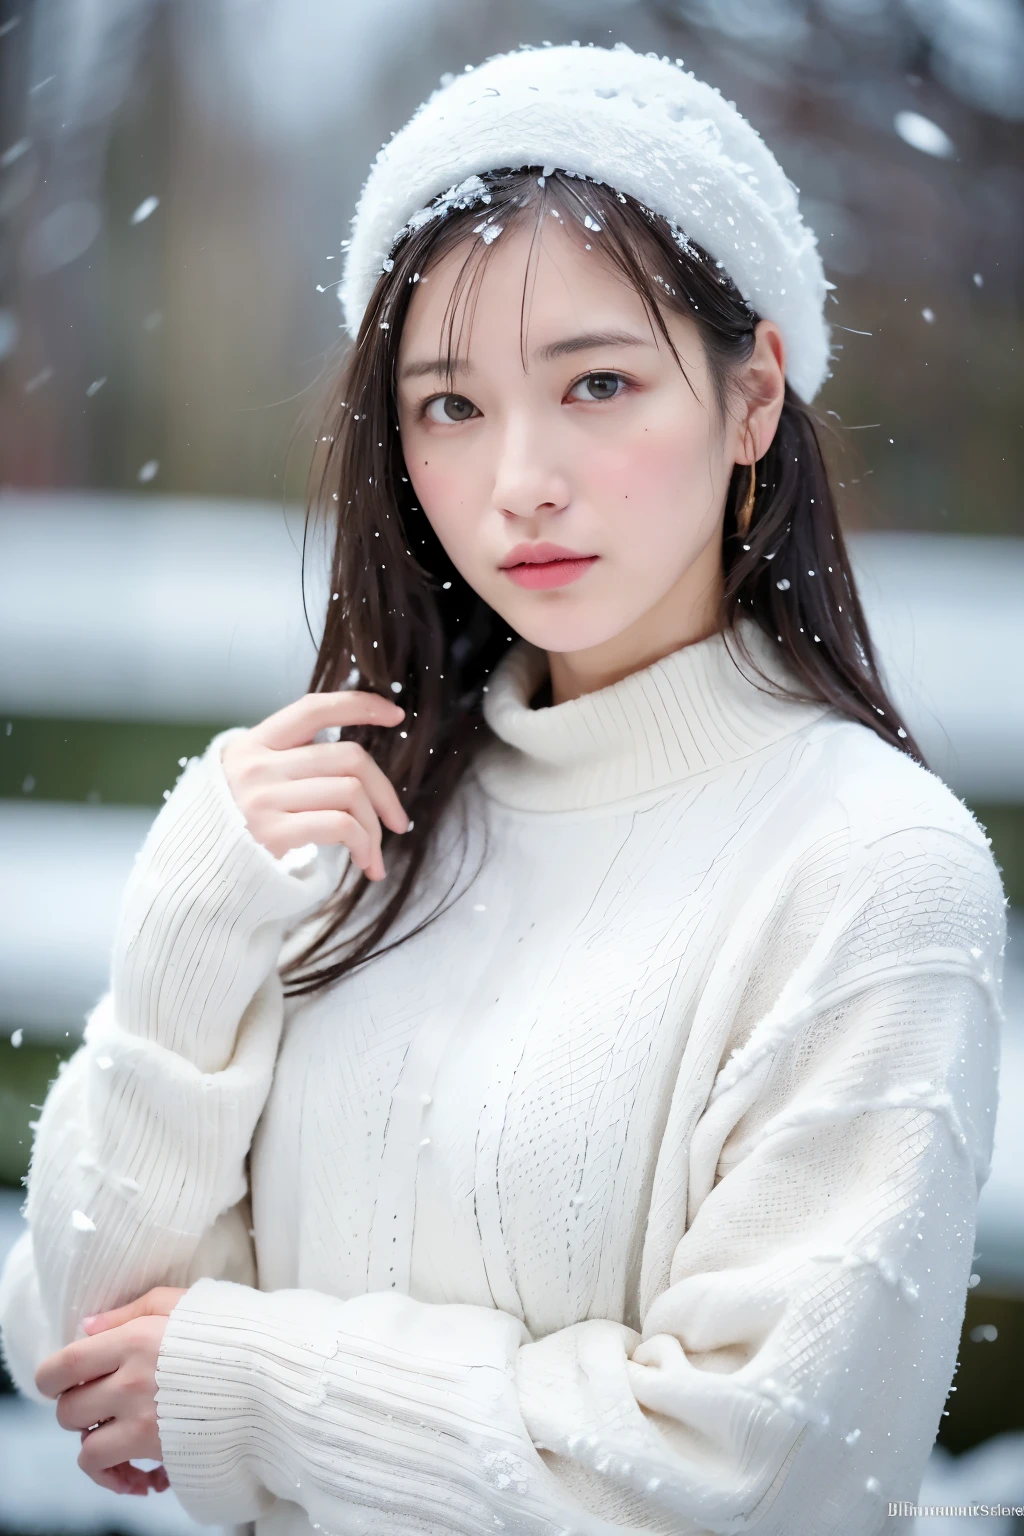 (8 كيلو、أعلى جودة、منضدية、· دقة عالية:1.2) (أسلوب بول روبنز وريبيكا جواي:1.1) (ثلج الشتاء القاتمة:1.4) صور نساء اليابان الجميلات、الملابس الوردية、